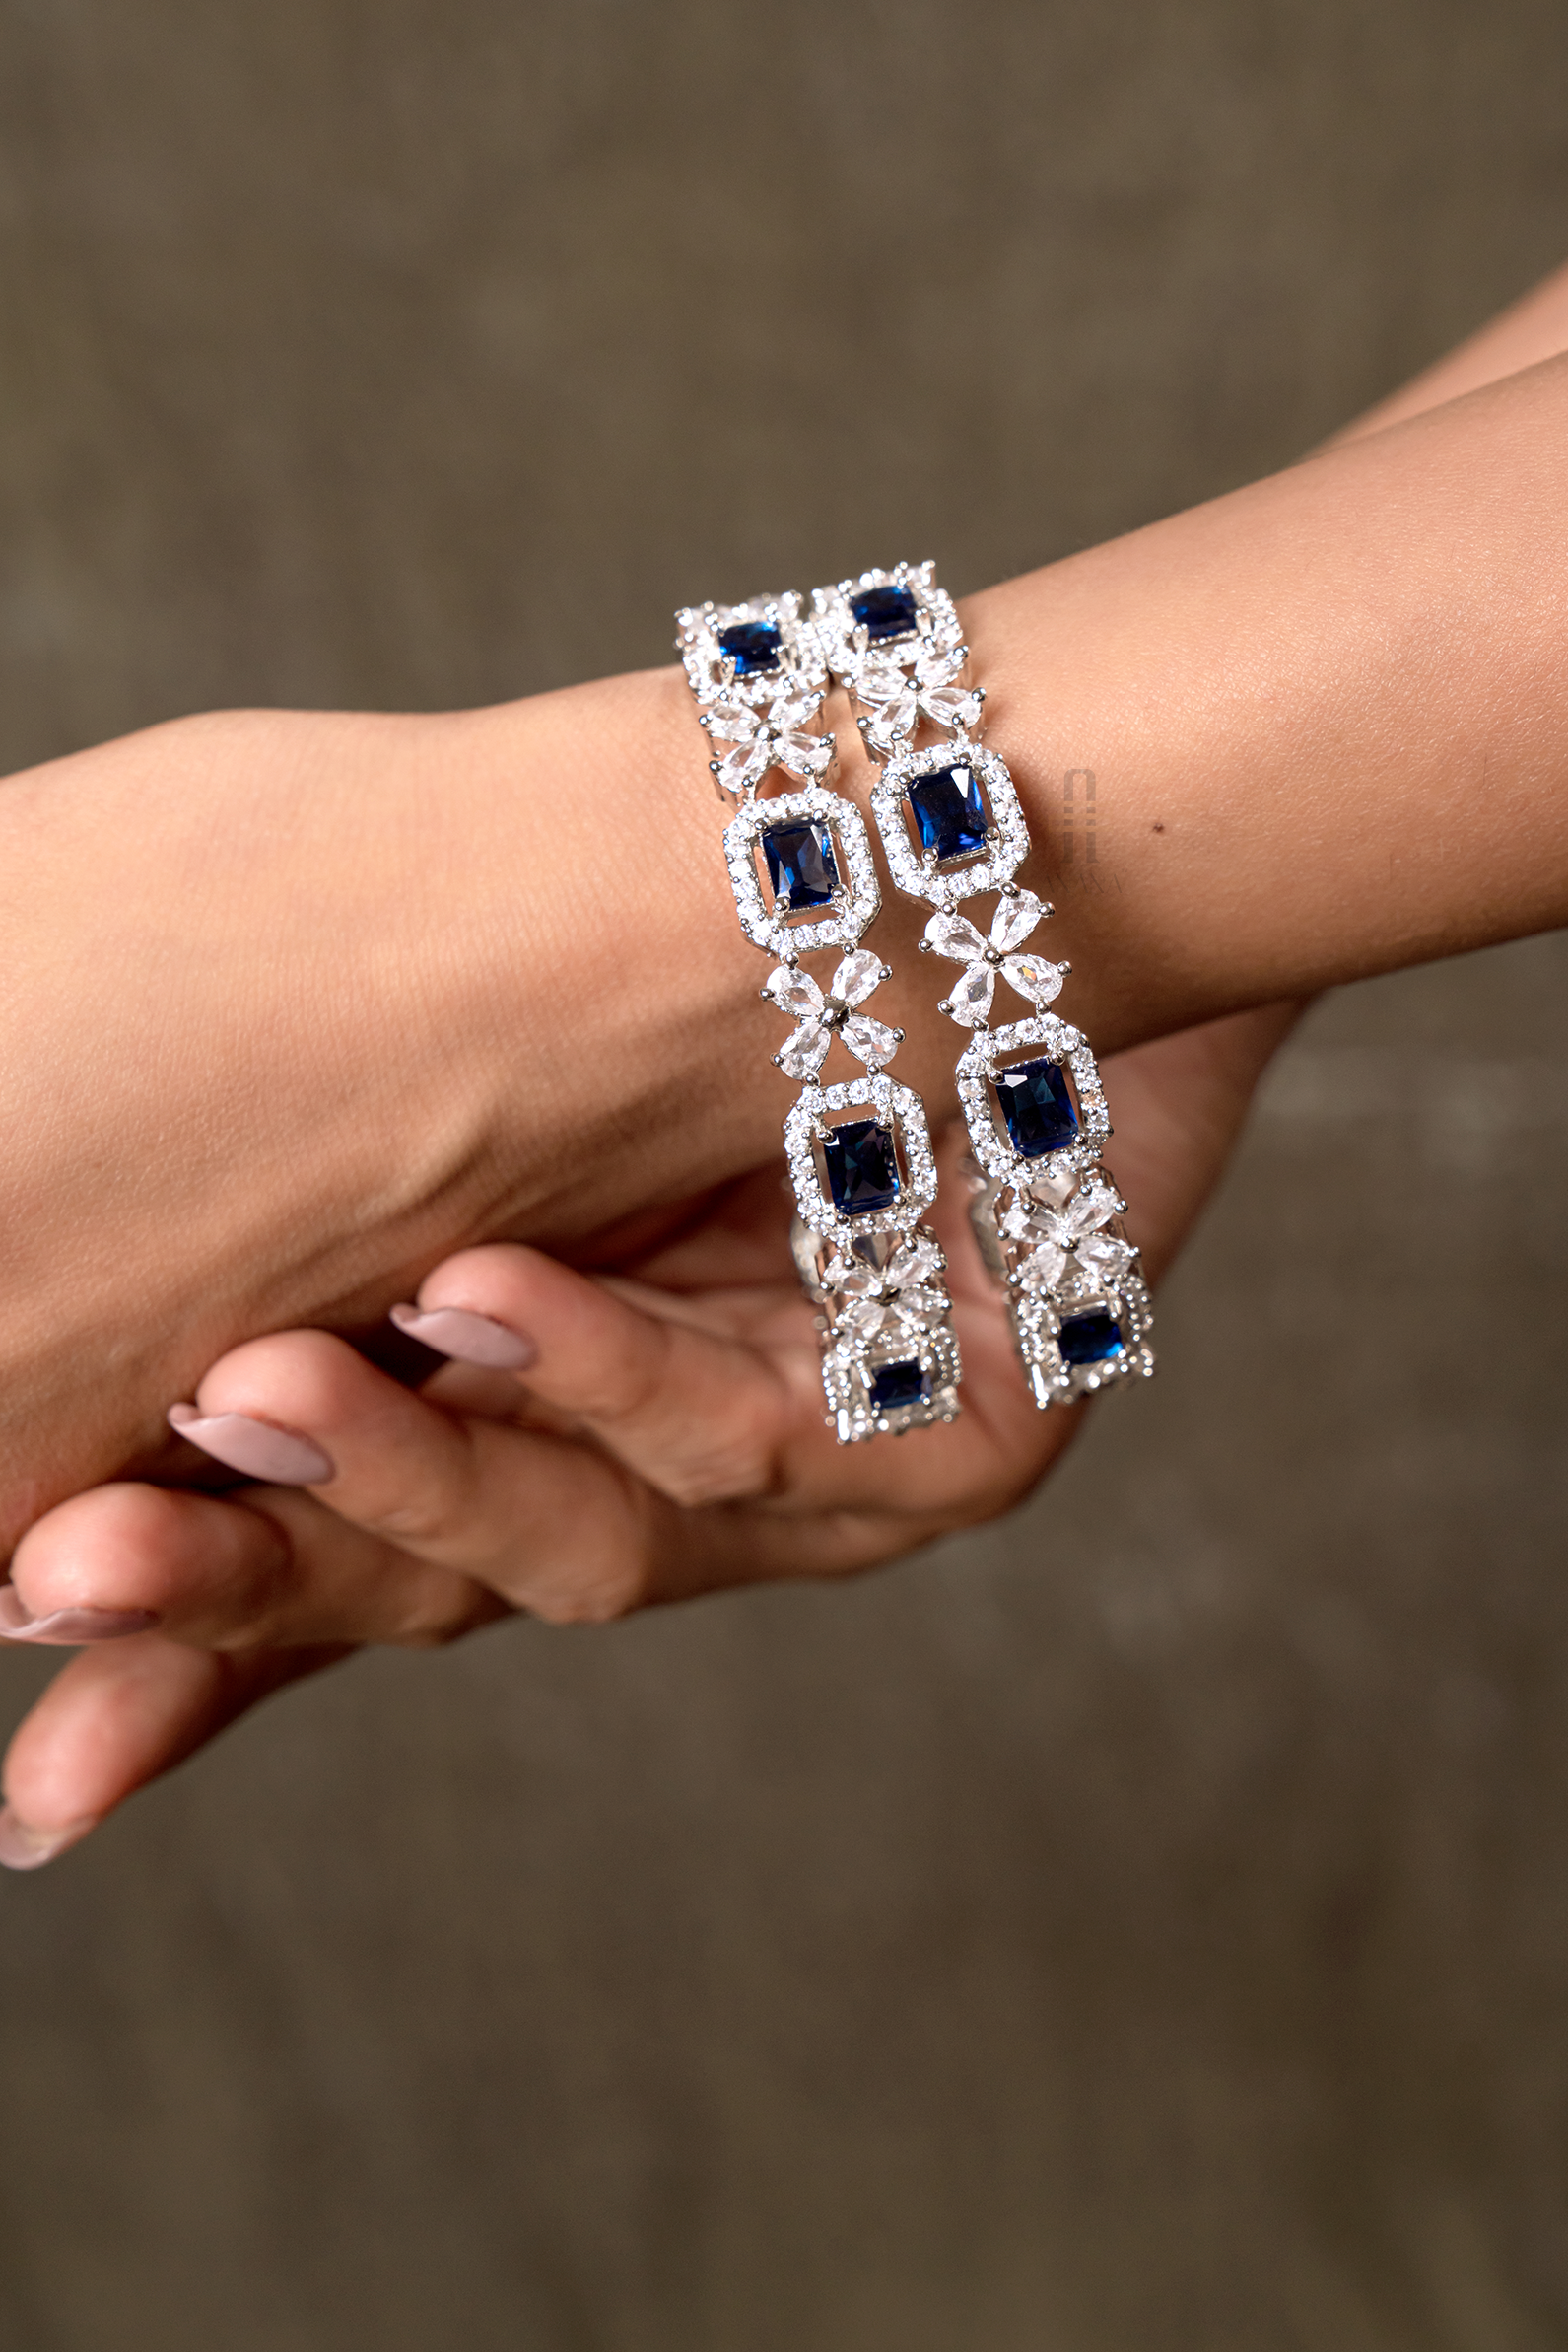 Shop our Artistic Fusion Rose Gold Diamond Bracelet now!